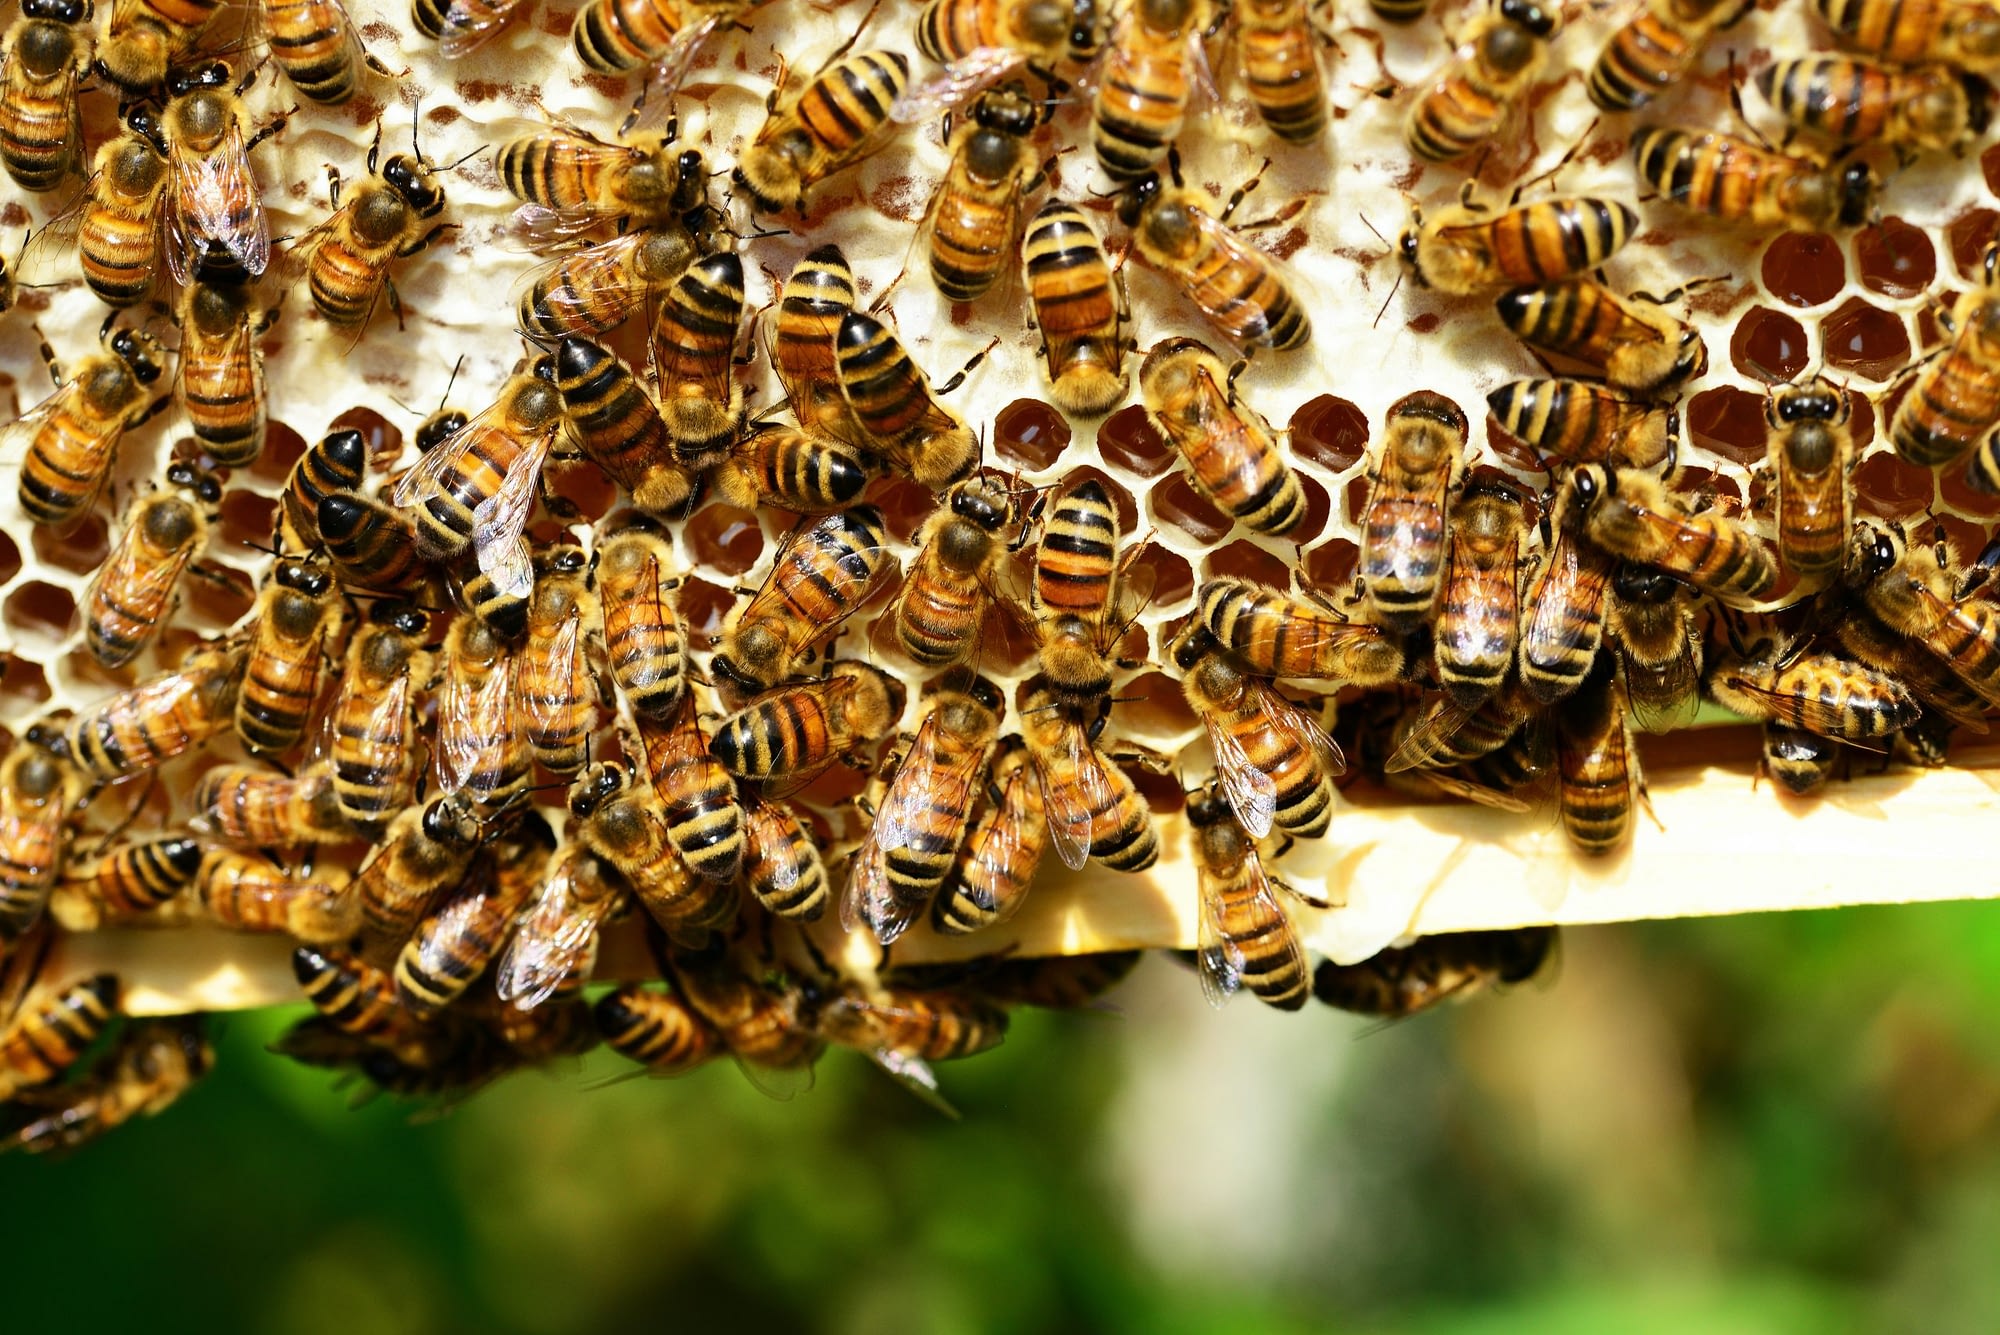 bees making honey in nest